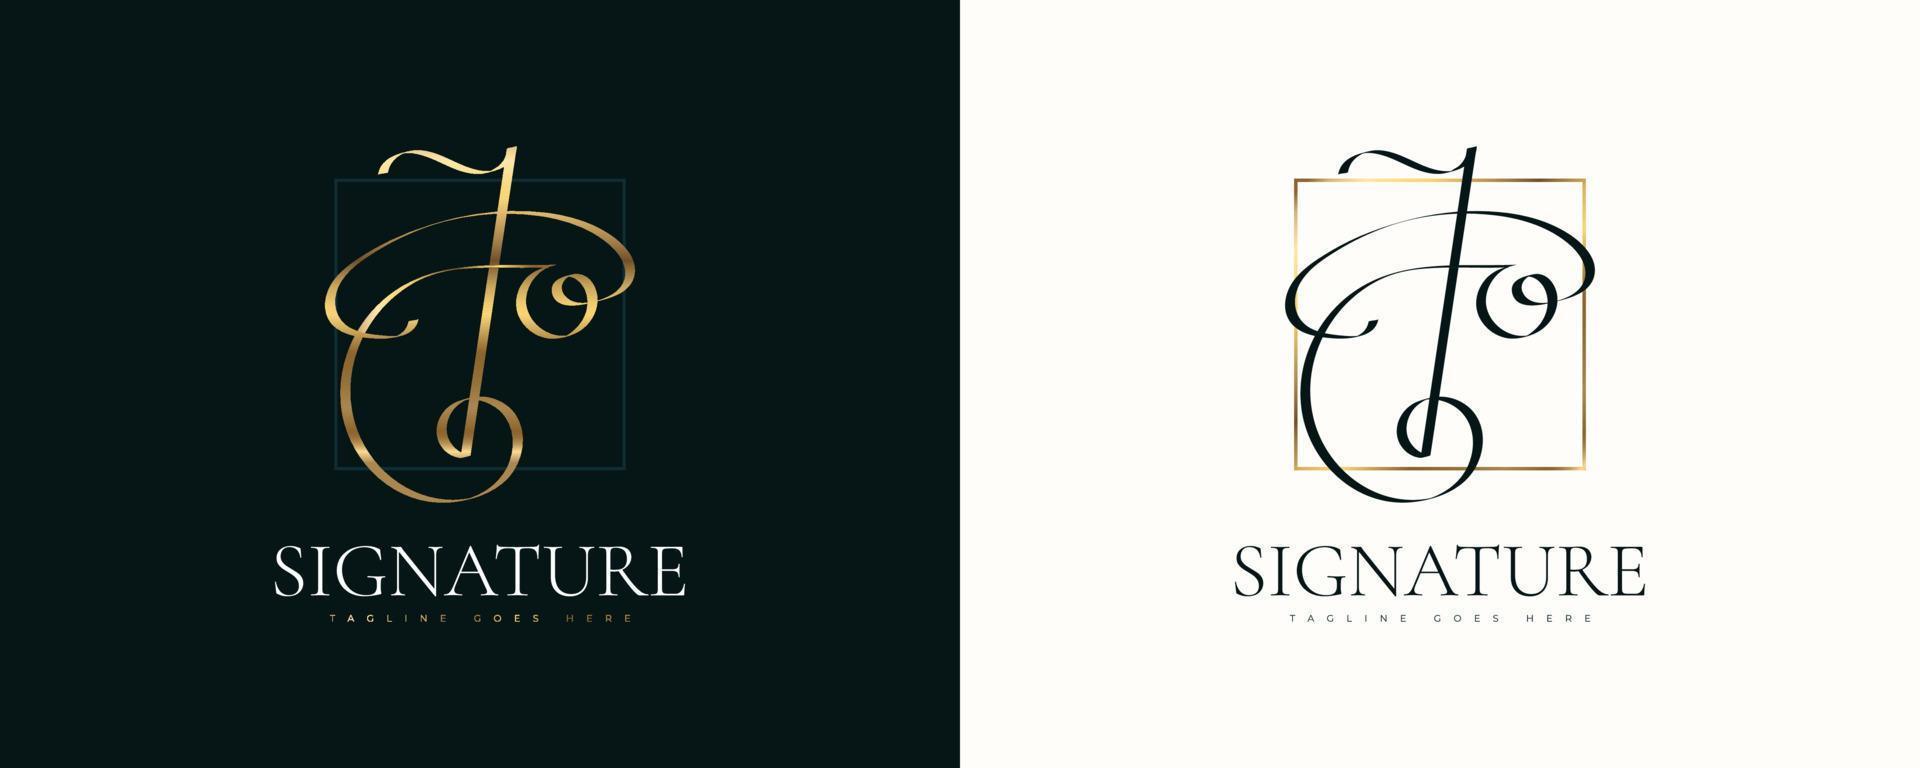 jo Initial-Signatur-Logo-Design mit elegantem und minimalistischem Handschriftstil. ursprüngliches j und o logo design für hochzeit, mode, schmuck, boutique und geschäftsmarkenidentität vektor